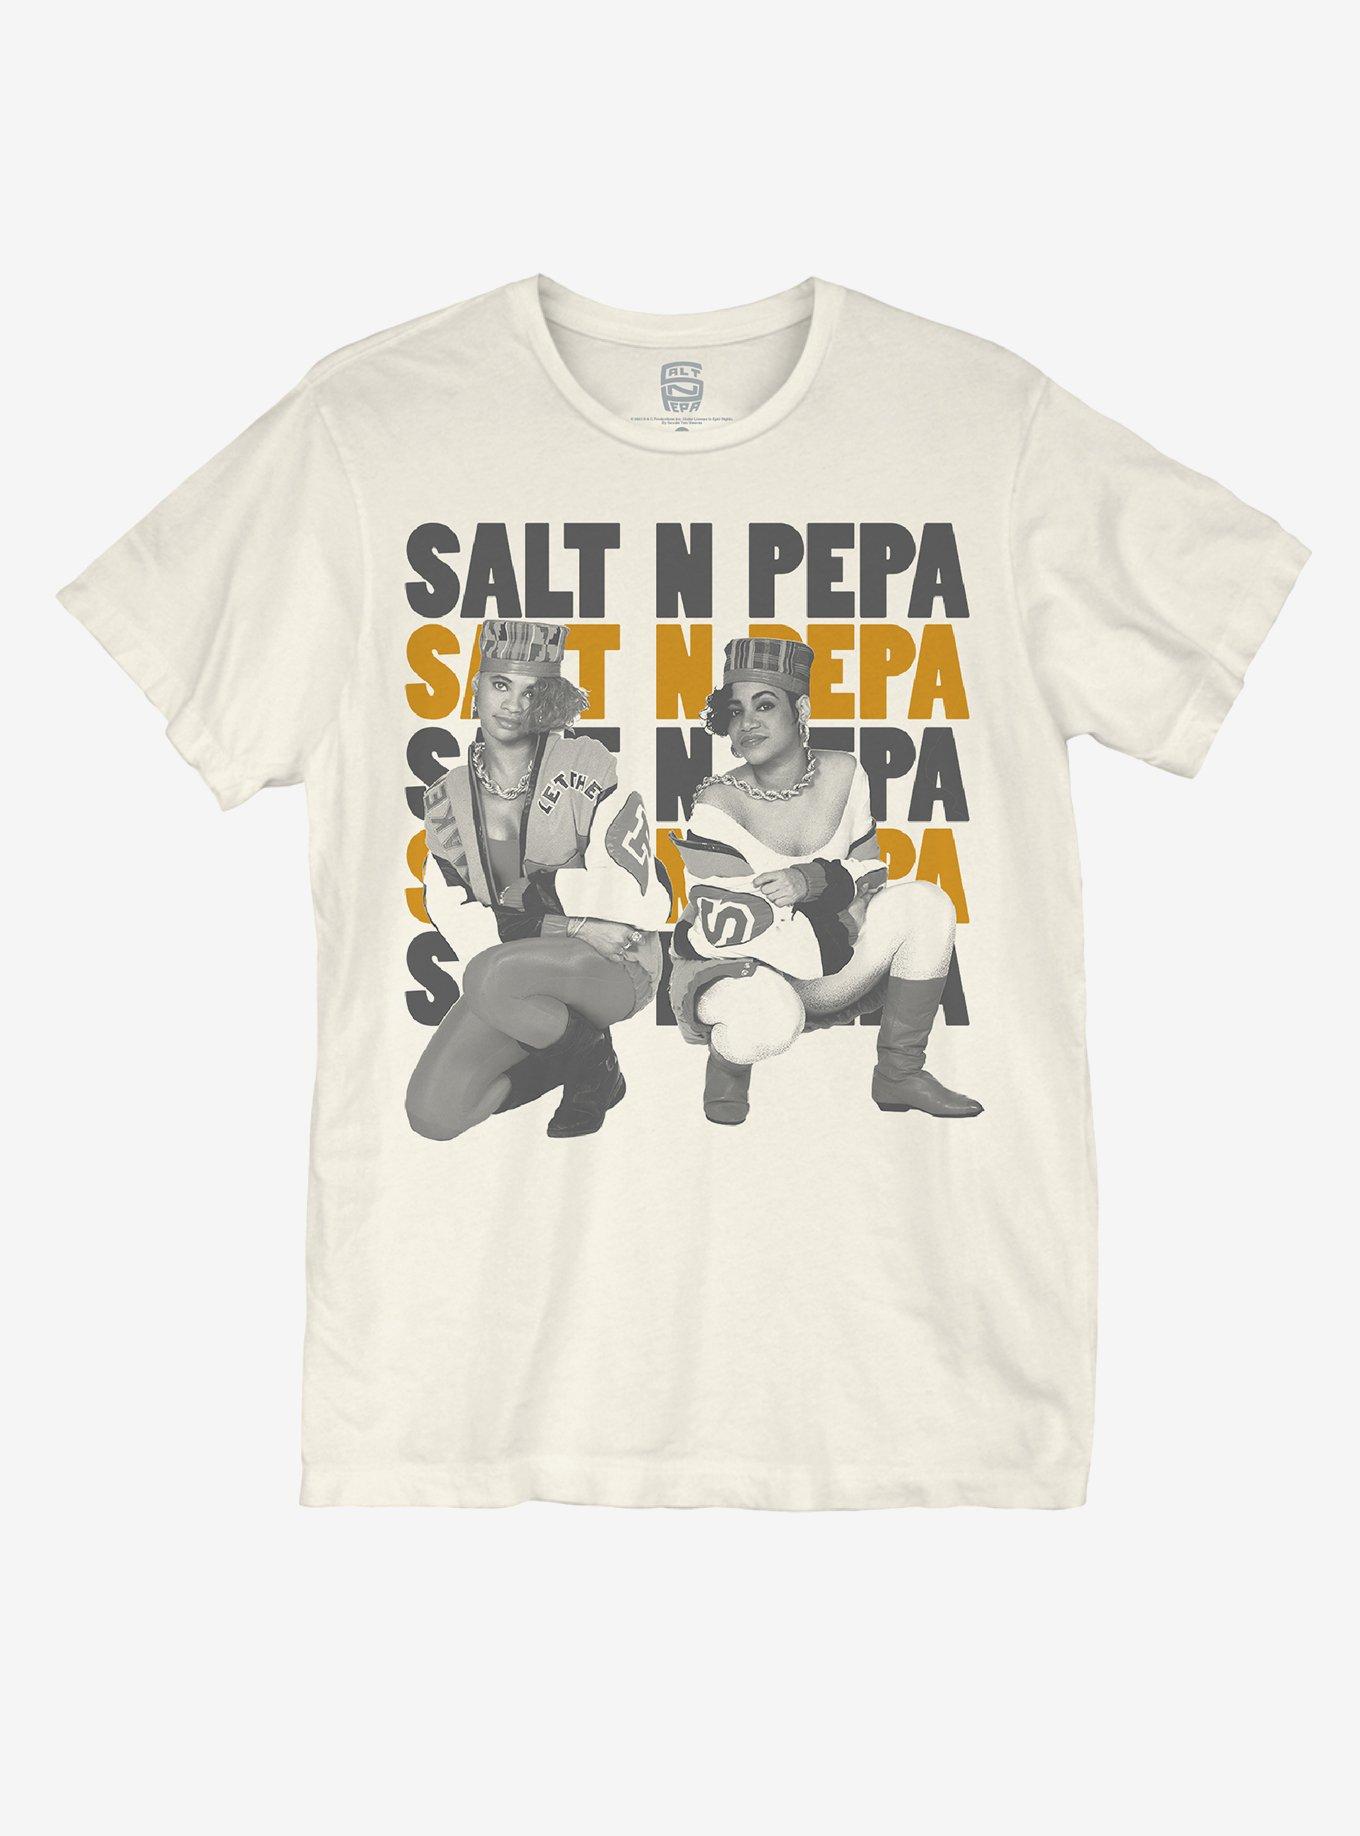 Salt n Pepa Salt & Pepper's Here - Salt N Pepa - Magnet